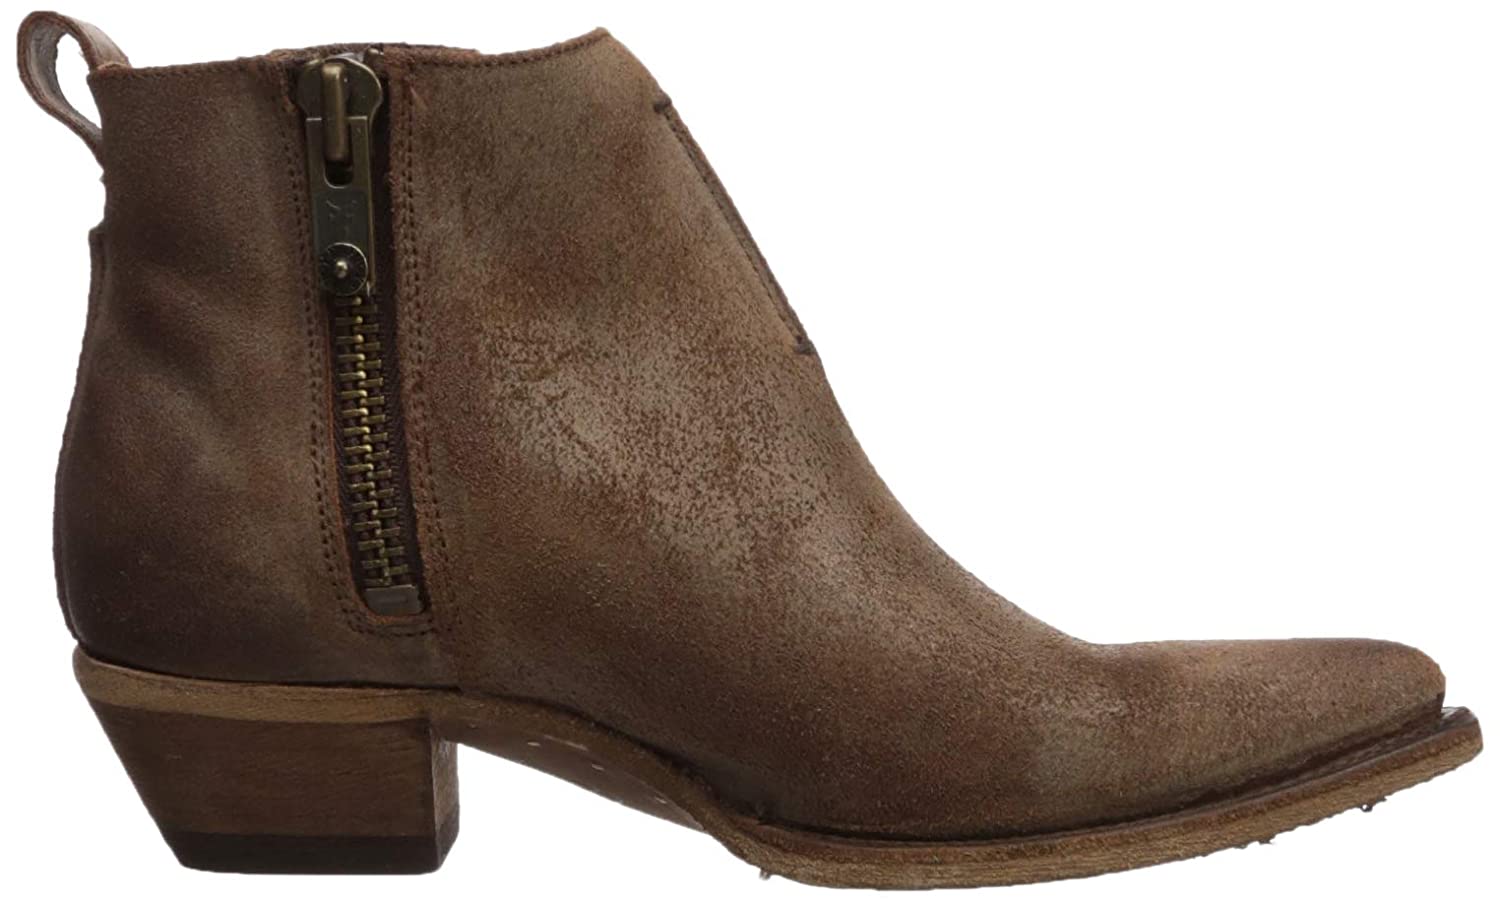 Frye Women's Sacha Moto Shortie Boot, Chocolate, Size 7.5